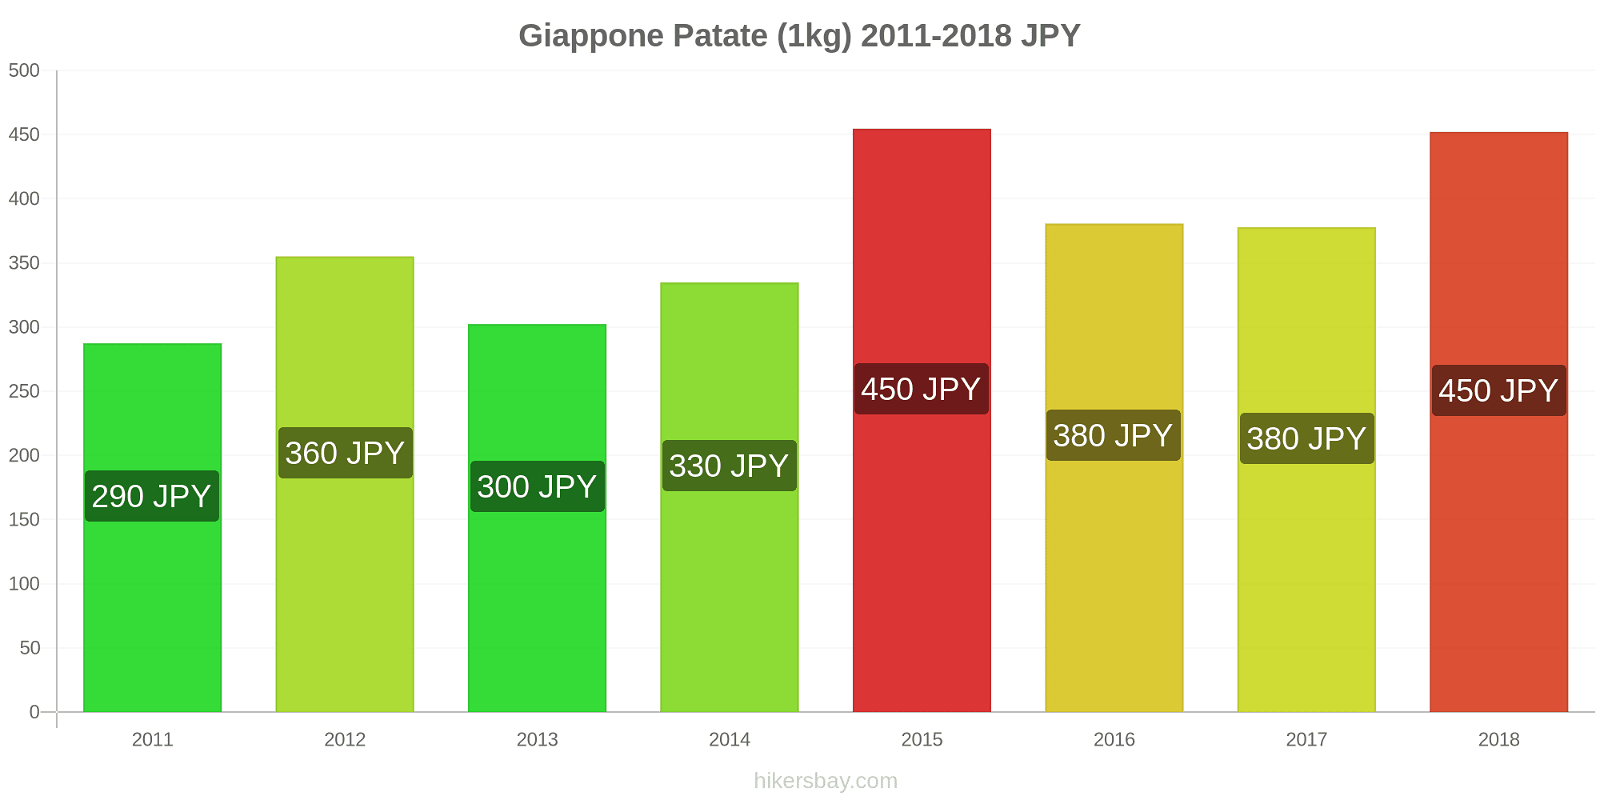 Giappone cambi di prezzo Patate (1kg) hikersbay.com